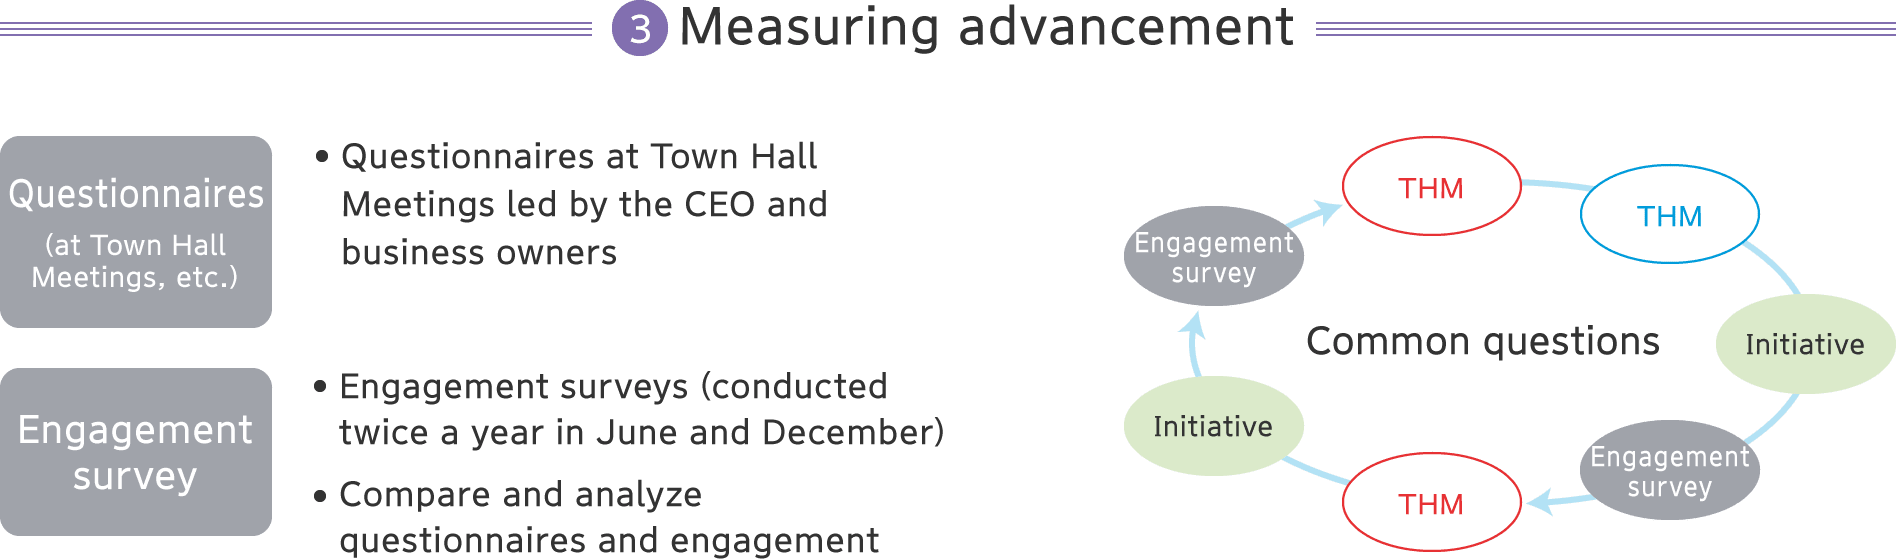 【3】Measuring advancement